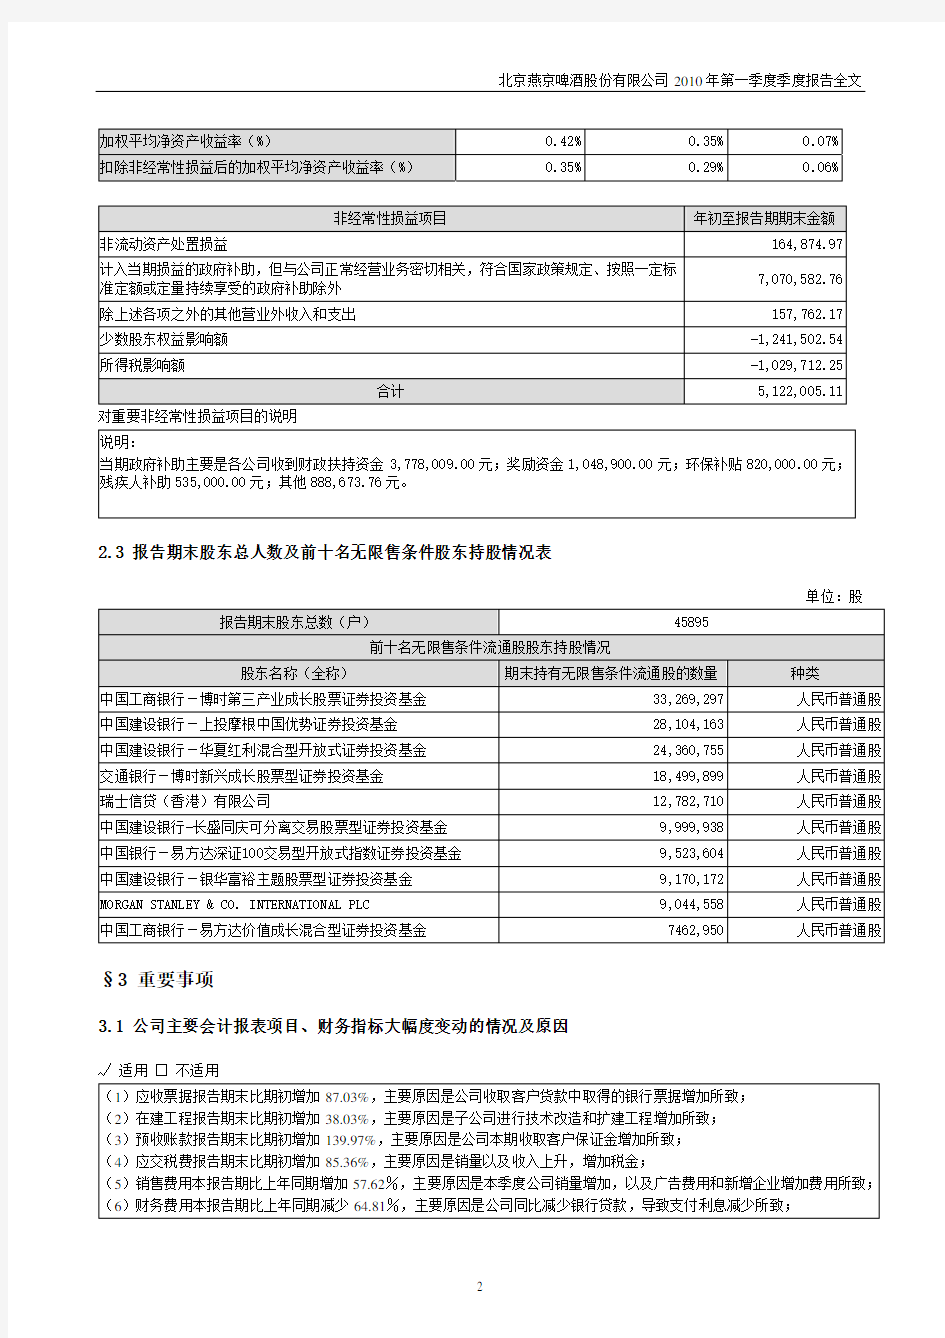 北京燕京啤酒股份有限公司2010年第一季度季度报告全文